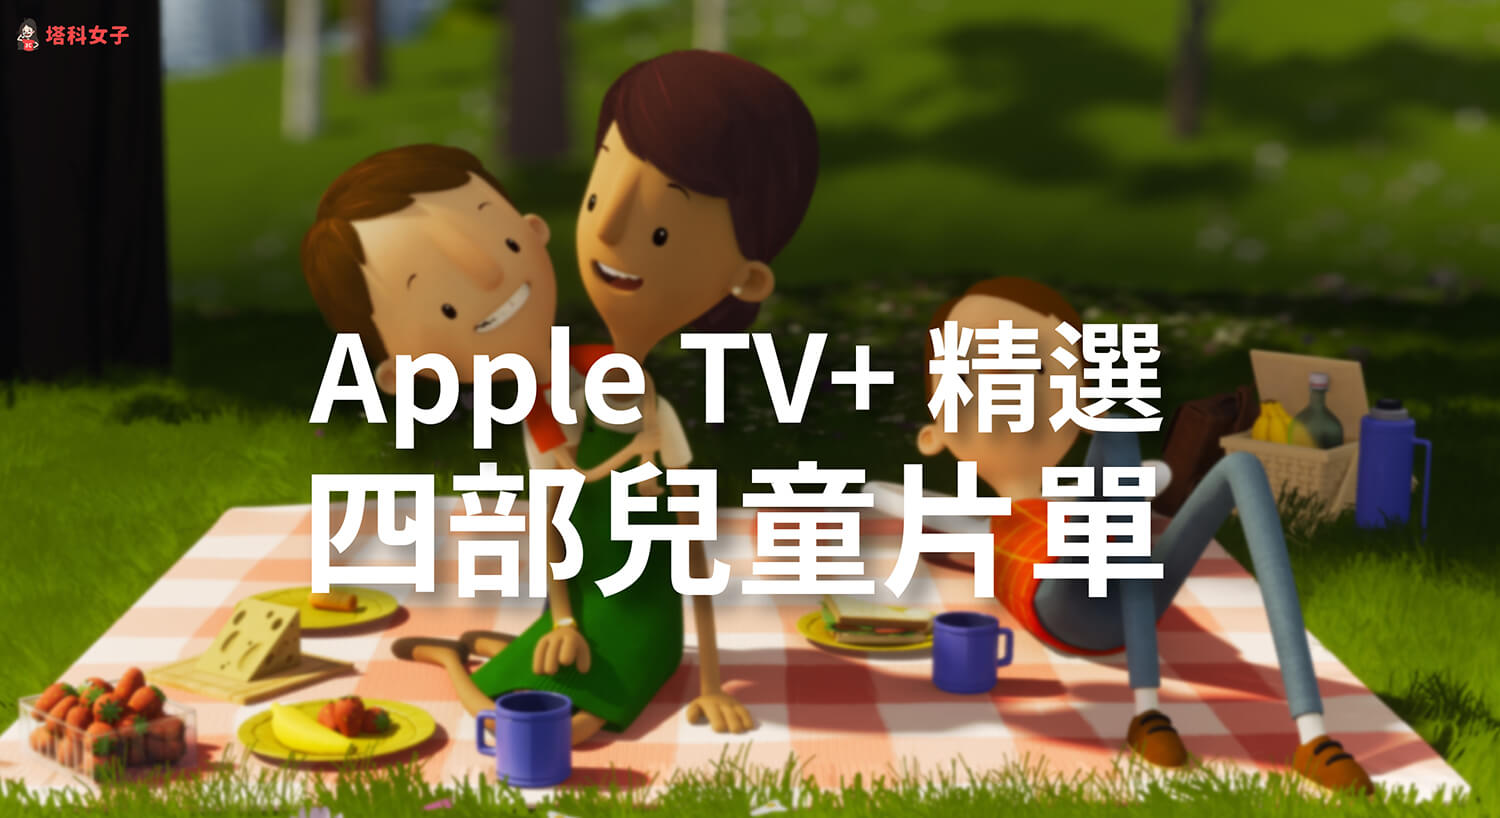 精選四部 Apple TV+ 兒童片單：史努比、可愛熊貓、查理布朗、歡迎來到這個美麗的星球